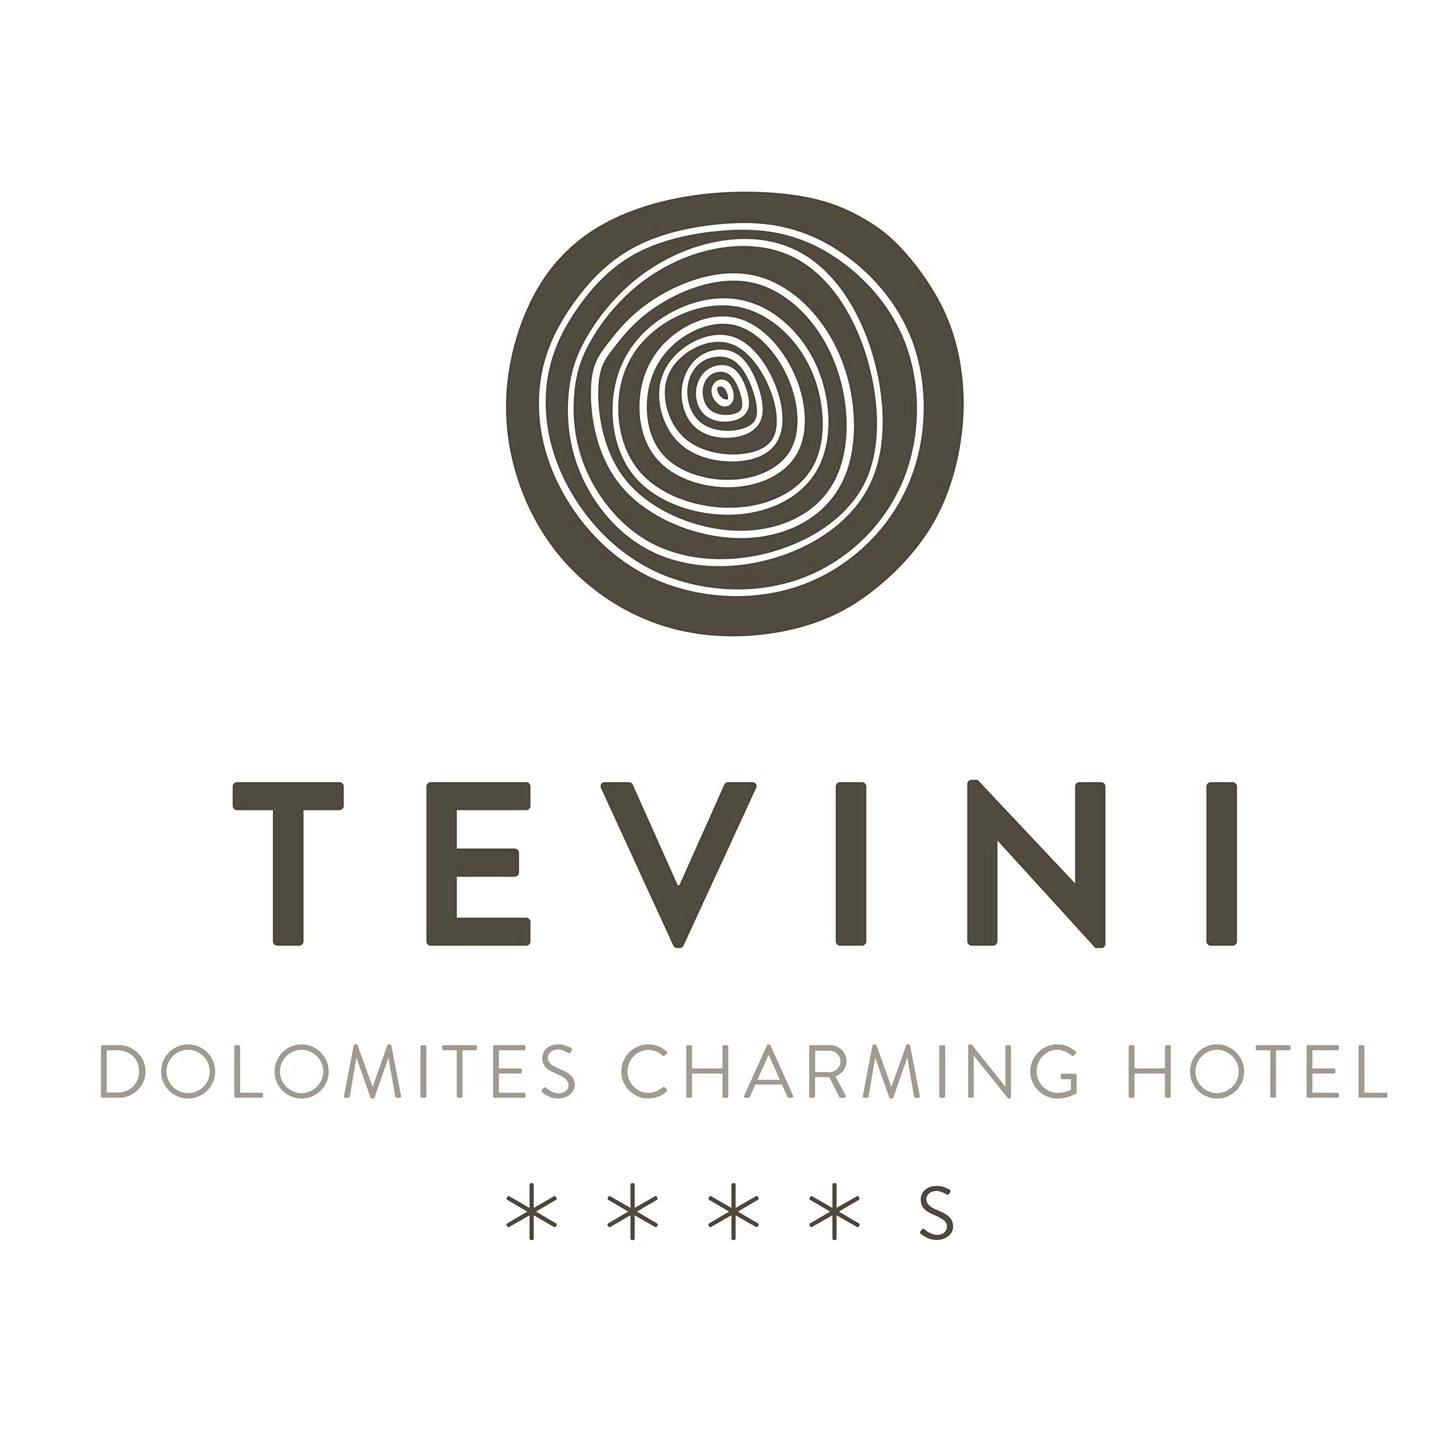 Tevini Dolomites Charming Hotel ****s - Commezzadura, Val di Sole